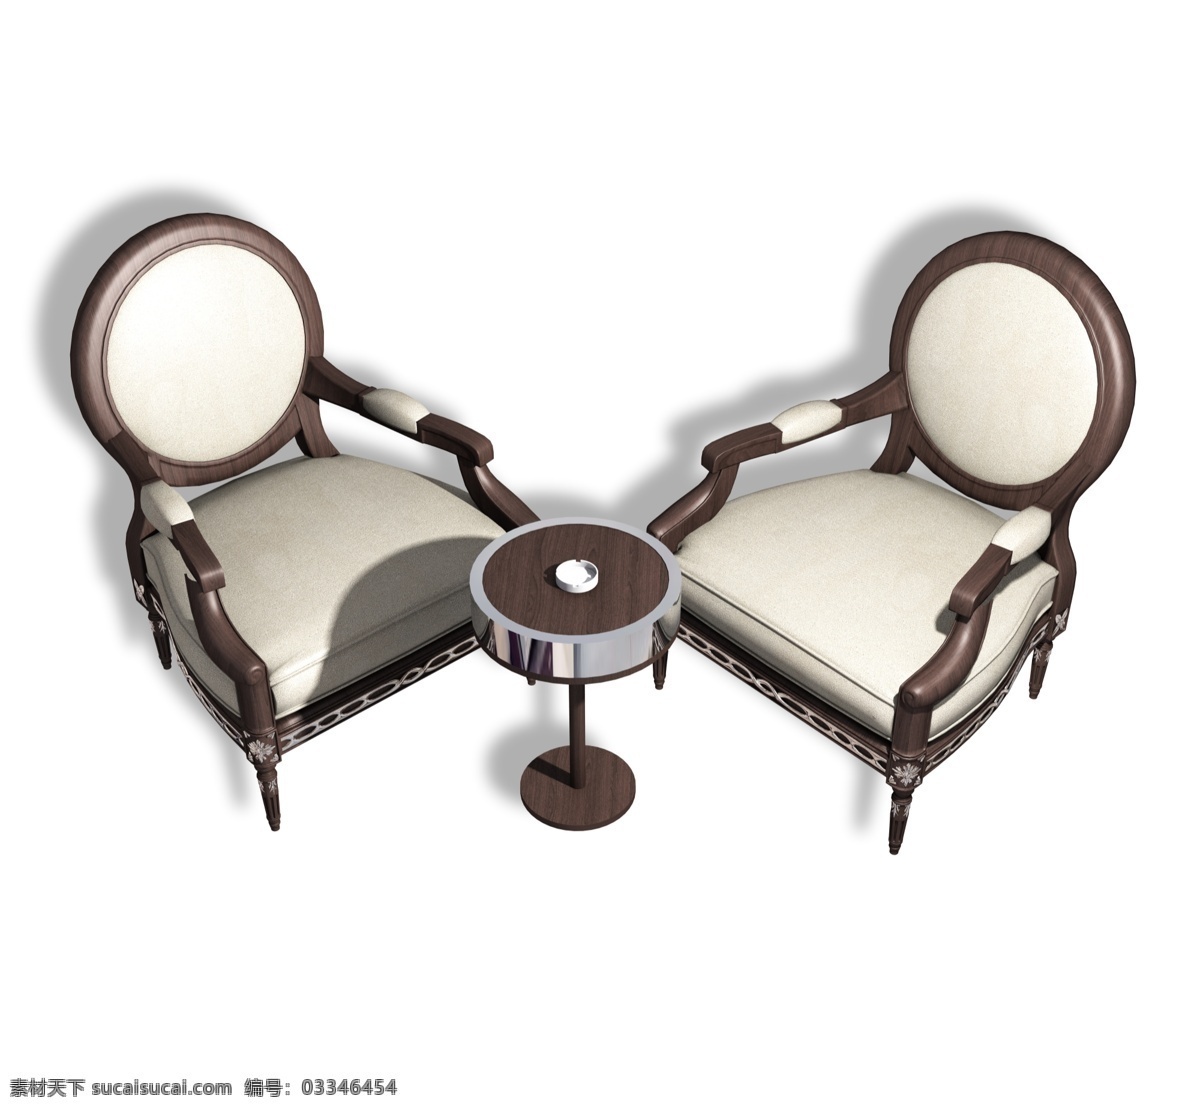 欧式 双人 沙发 软 座椅 软座椅 软皮座椅 实木软皮座椅 简欧家具 现代家居 椅子 高档木椅